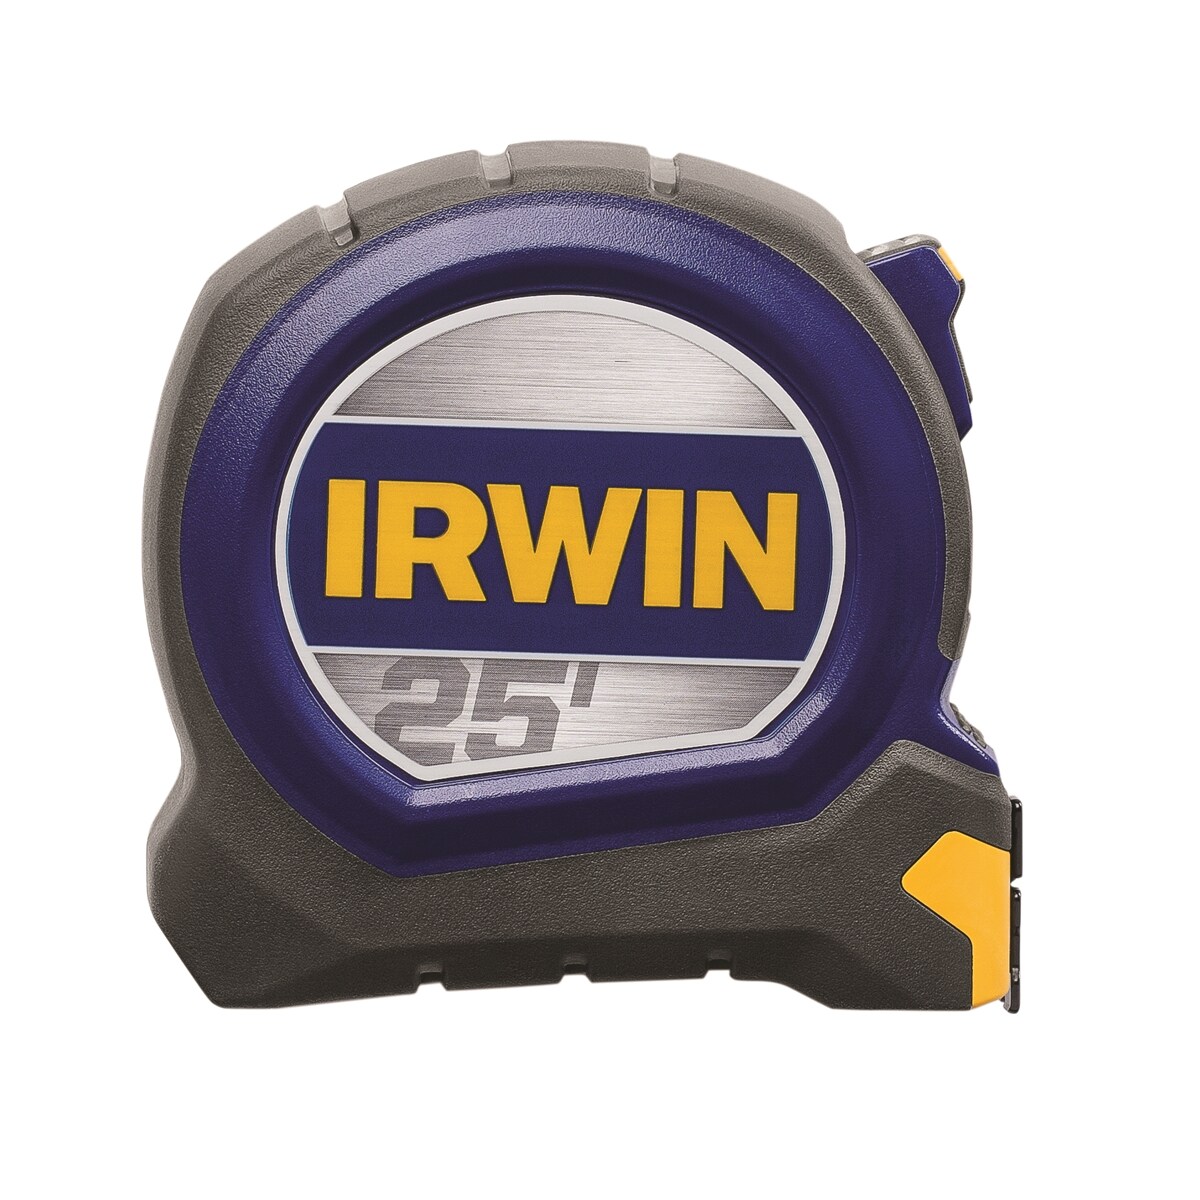 Irwin 26' - 1 Blade Width Tape Measure for sale online